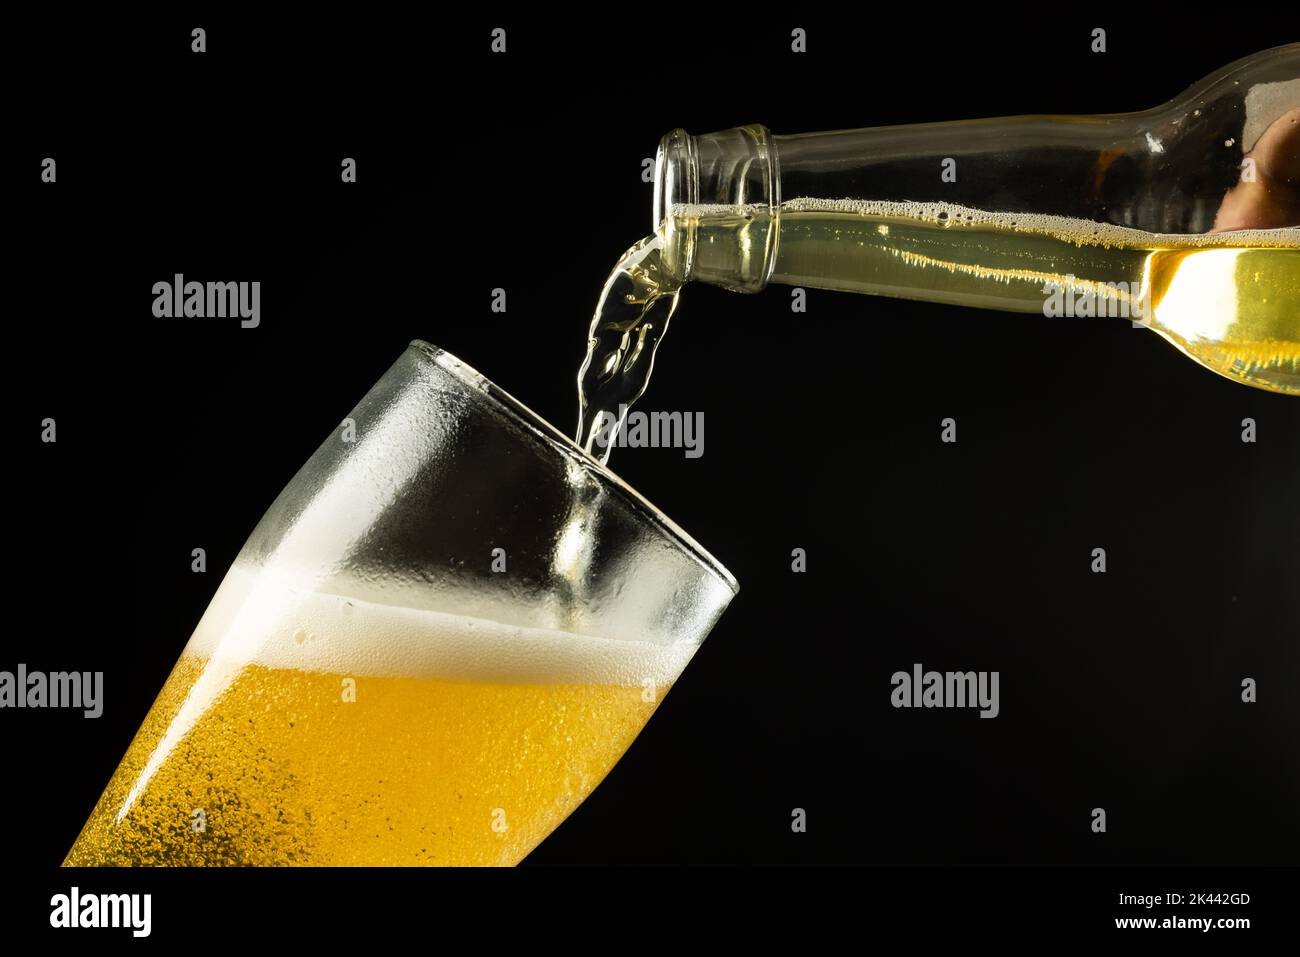 Image horizontale d'une bouteille transparente de bière lager qui coule dans le verre sur fond noir, avec espace de copie Banque D'Images